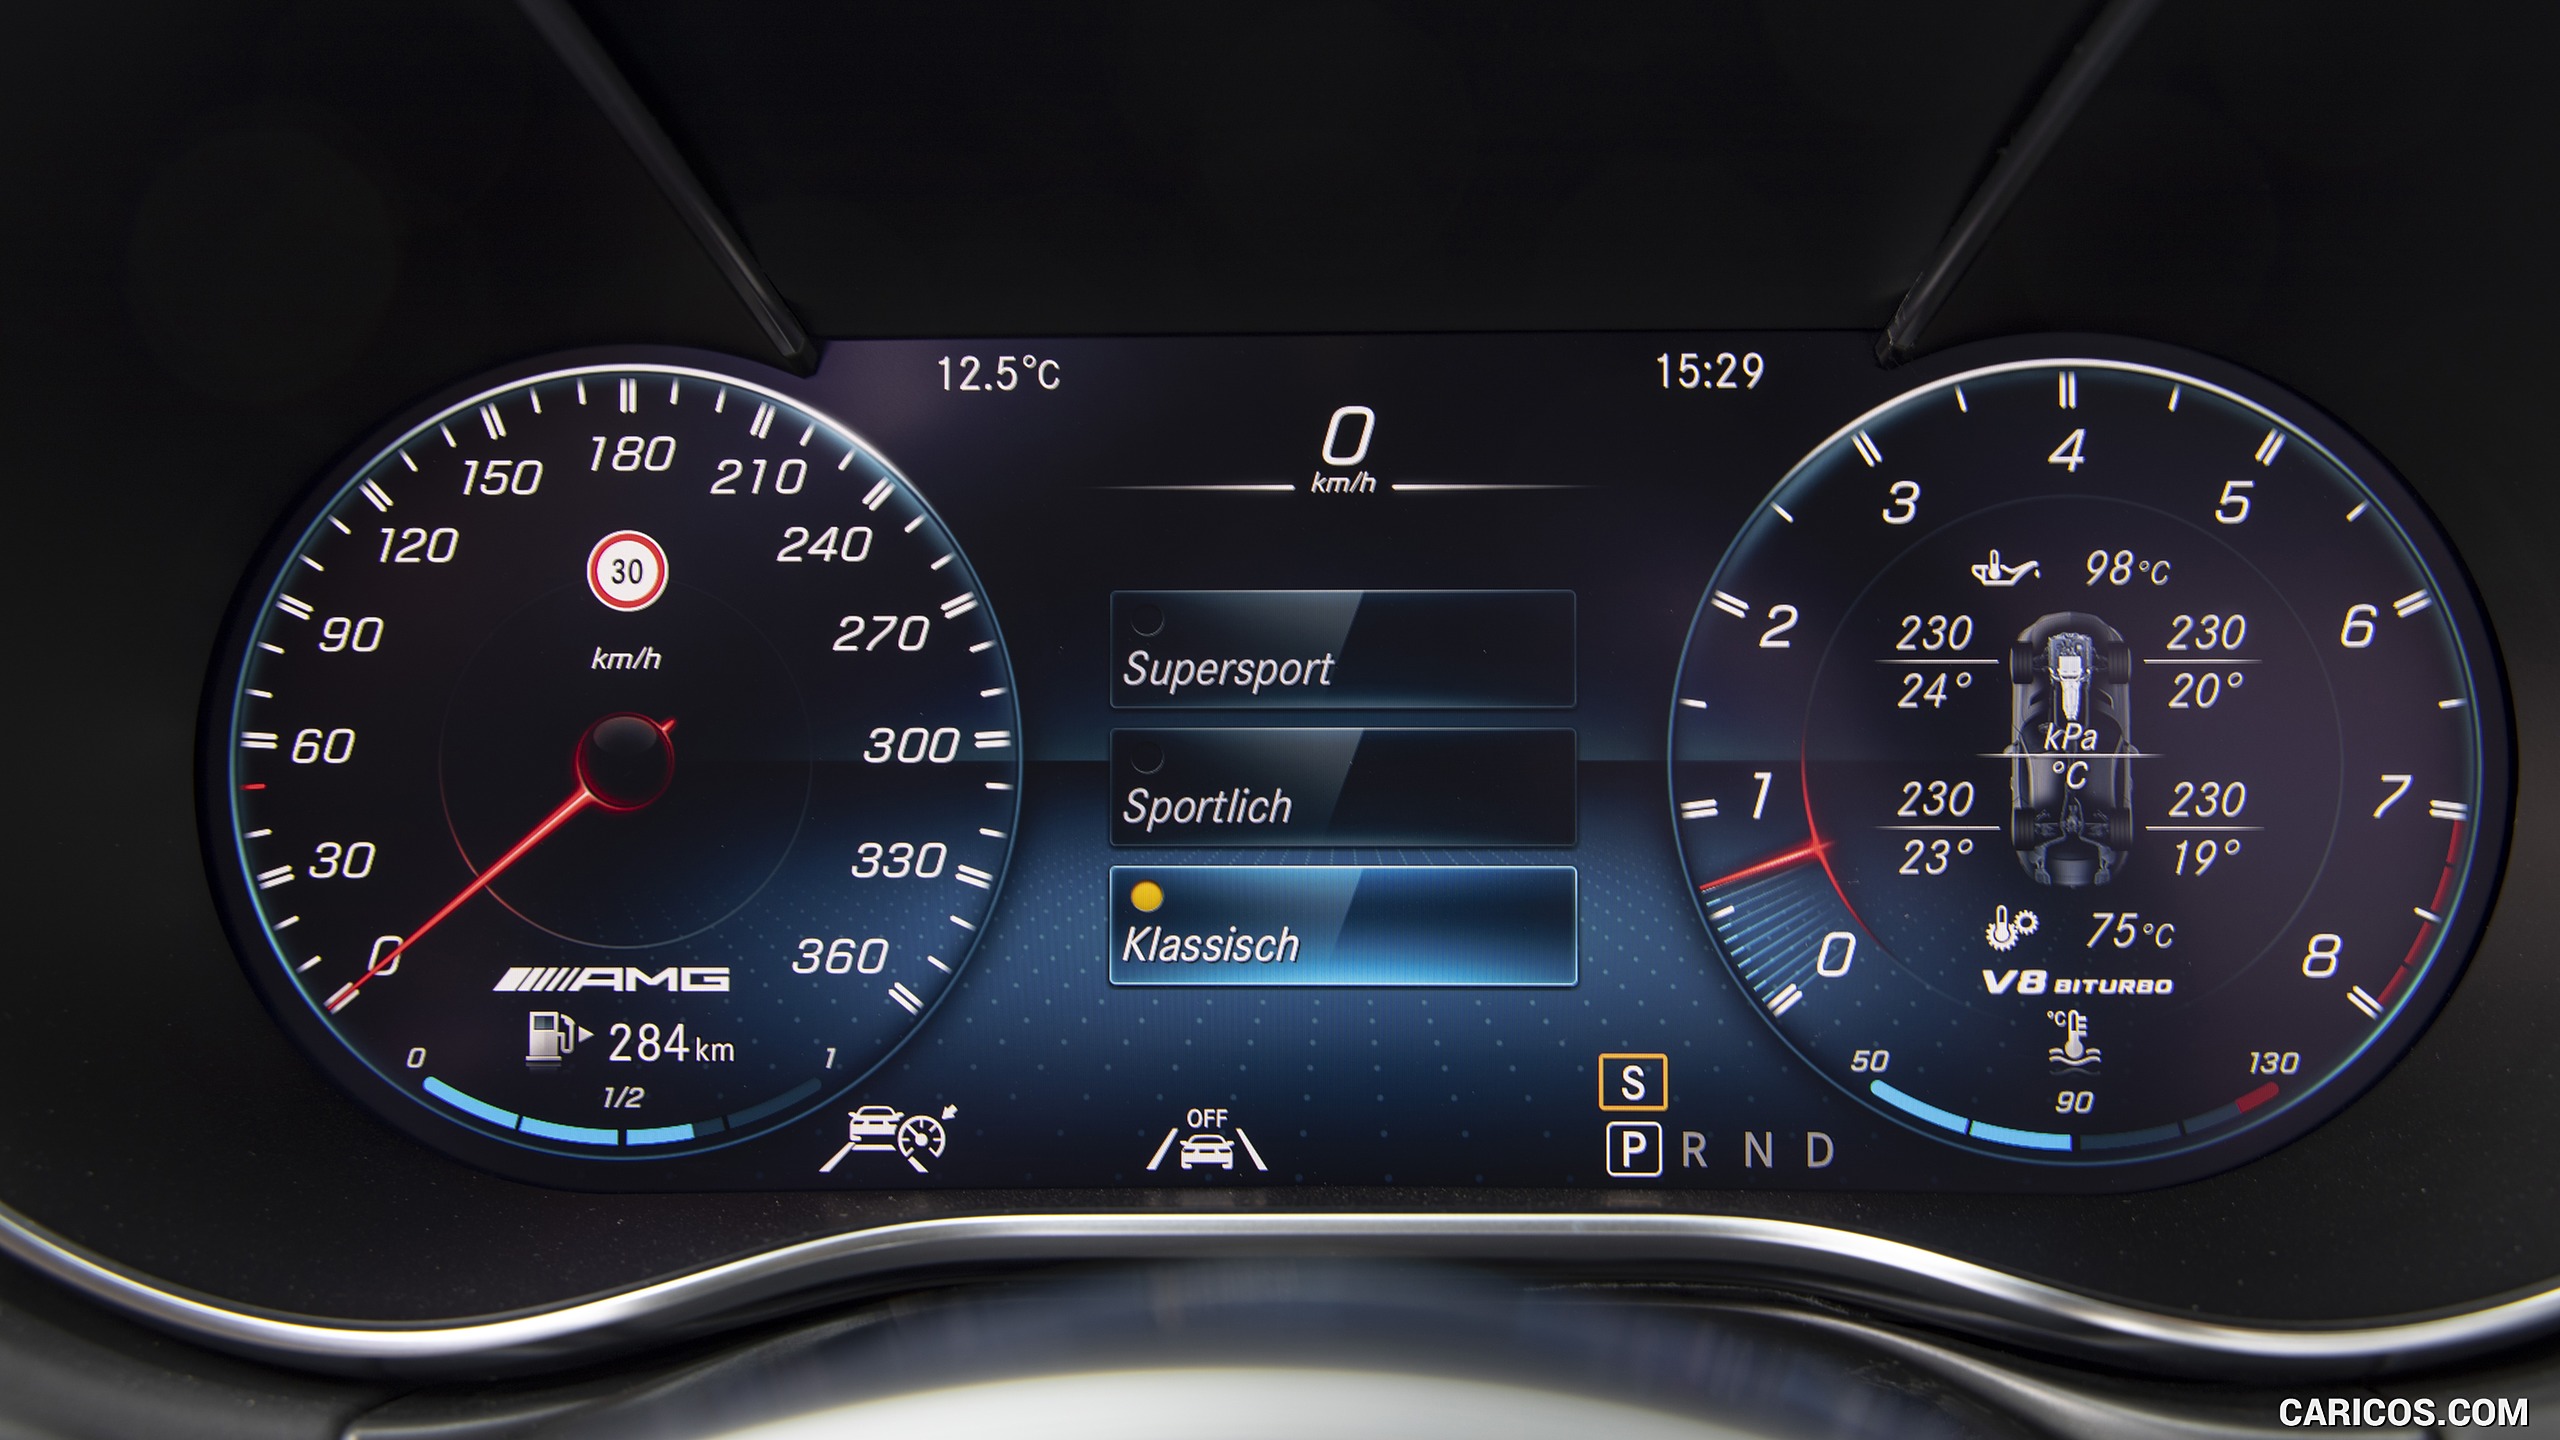 2020 Mercedes-AMG GT S Roadster - Digital Instrument Cluster, #108 of 328